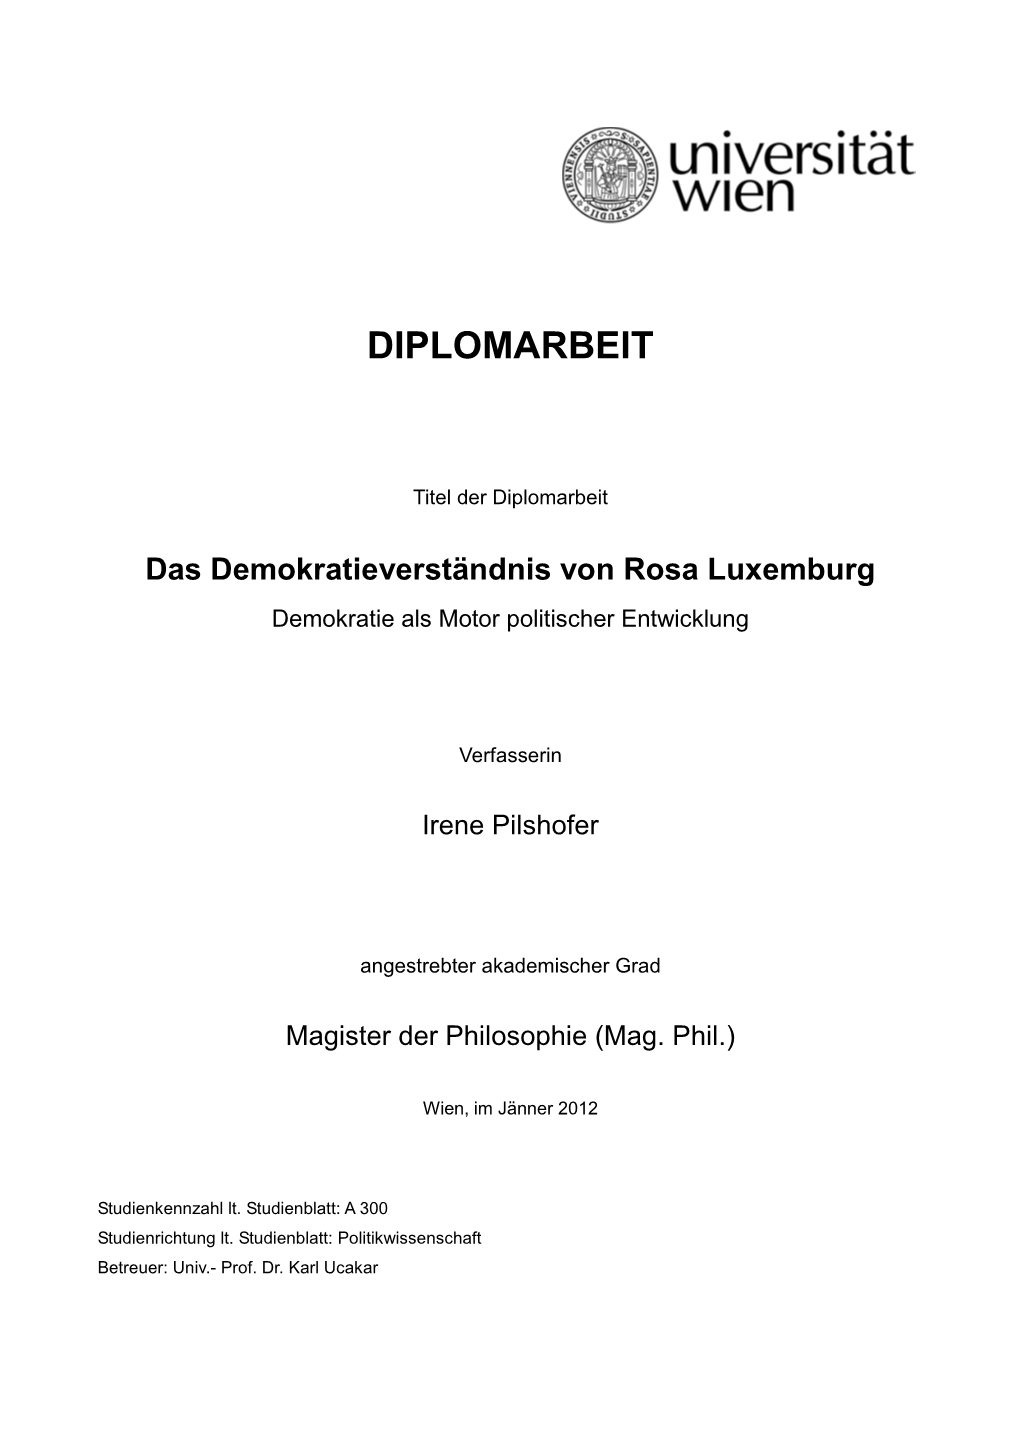 III. Rosa Luxemburg Und Demokratie